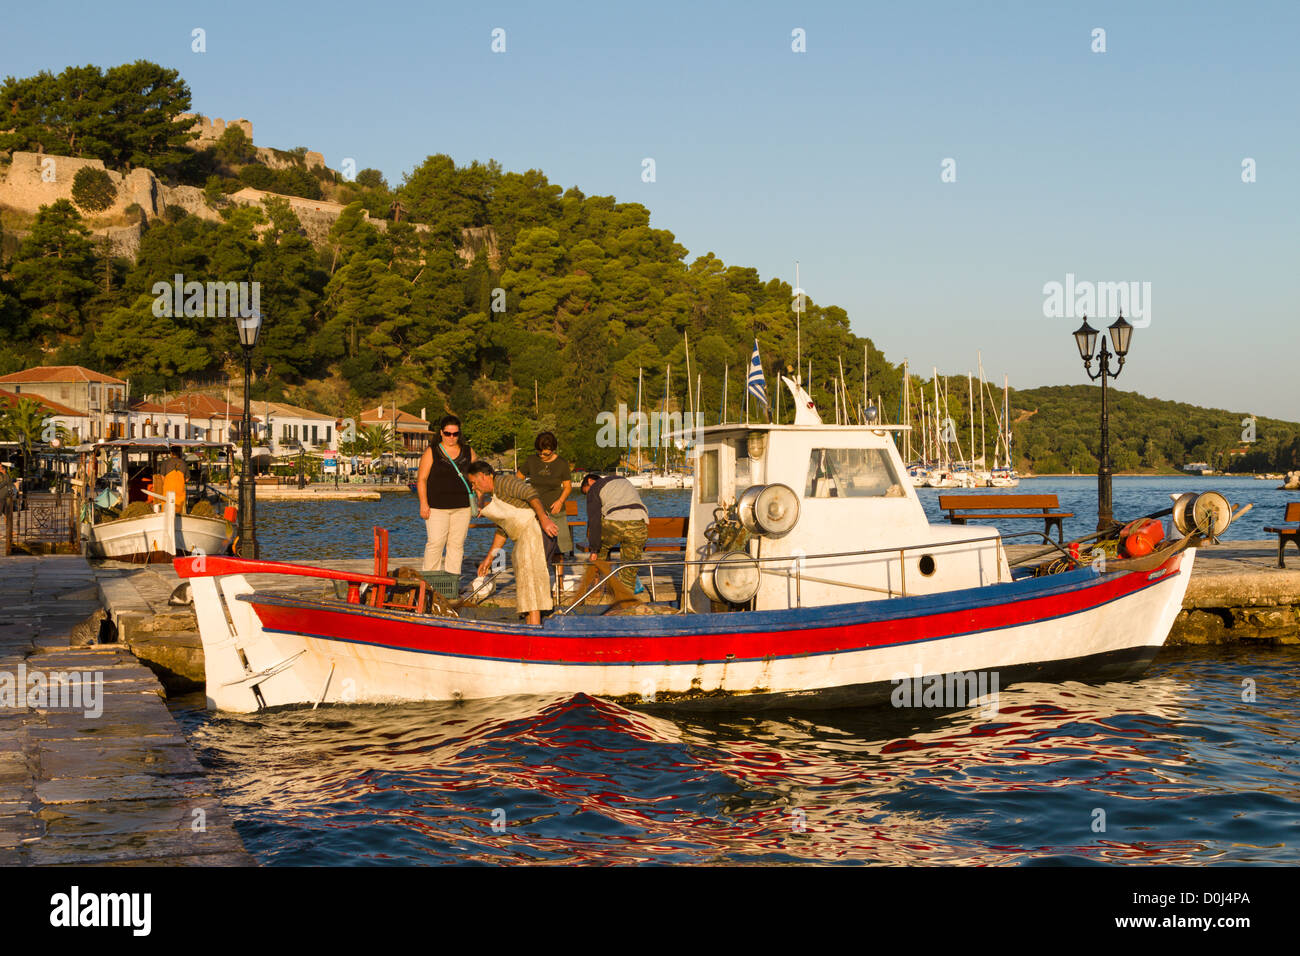 Woman buying fish from fishing boat at Vonitsa, Ambracian Gulf, Greece Stock Photo